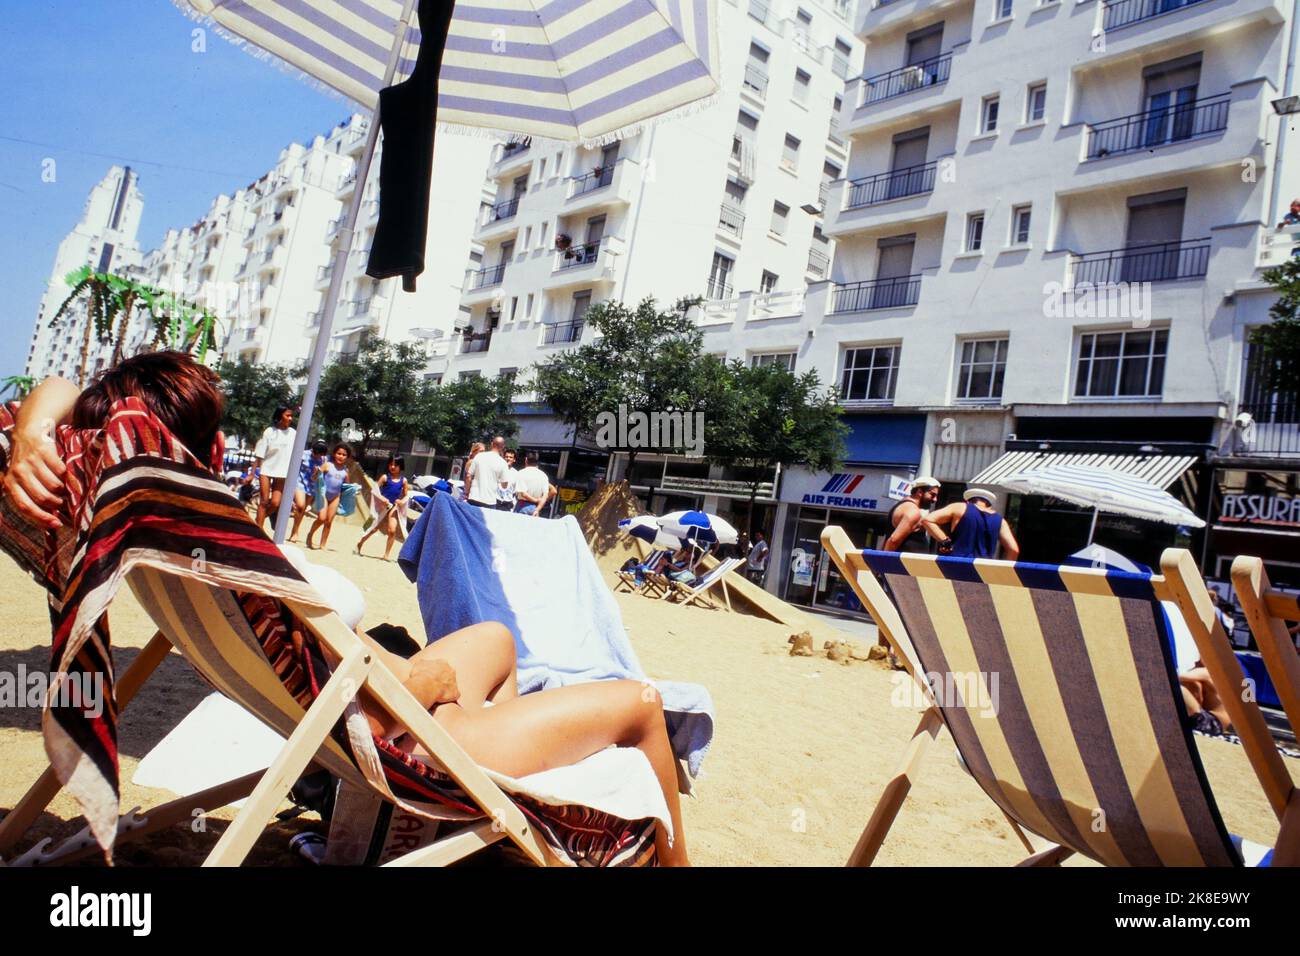 Una playa de arena en Gratte-ciel, instalación urbana, Villeurbanne, Ródano, Francia, 1995 Foto de stock